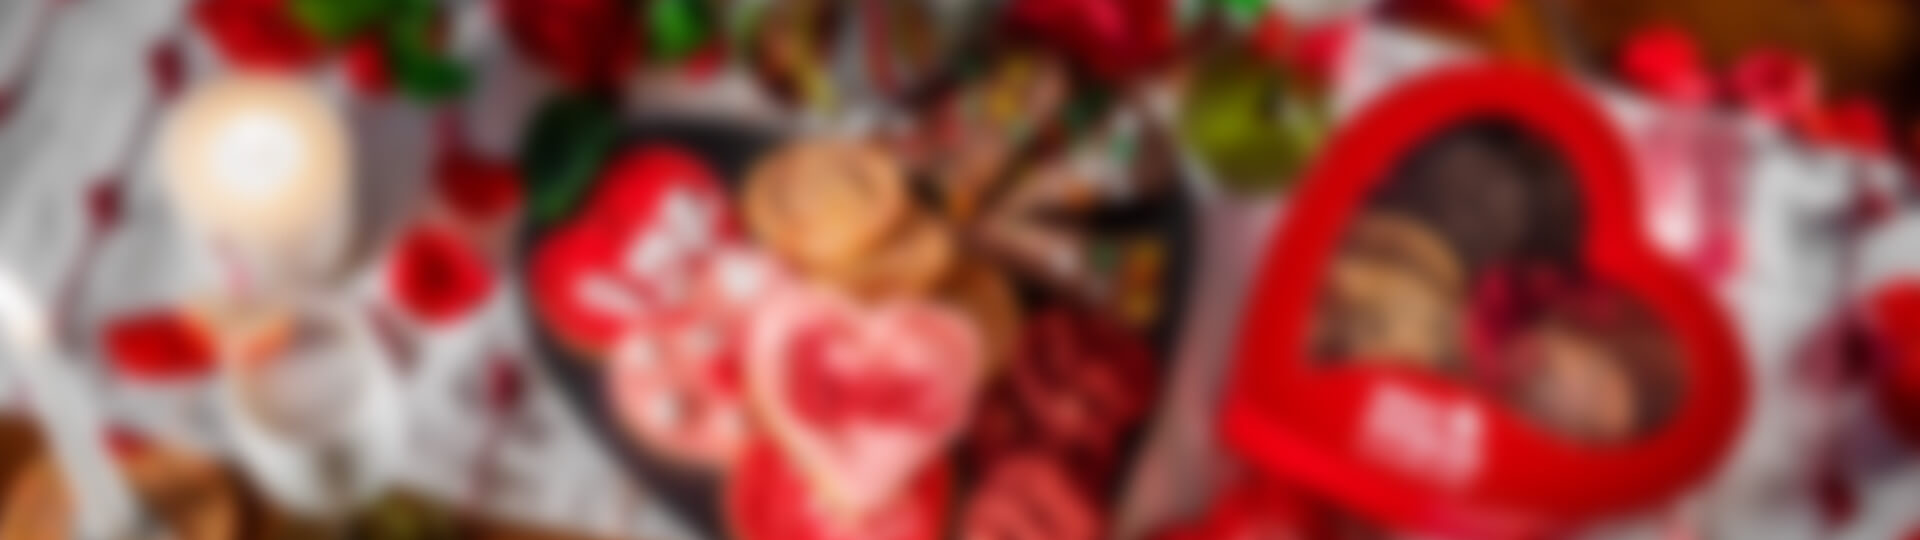 Valentines+Day_blurred